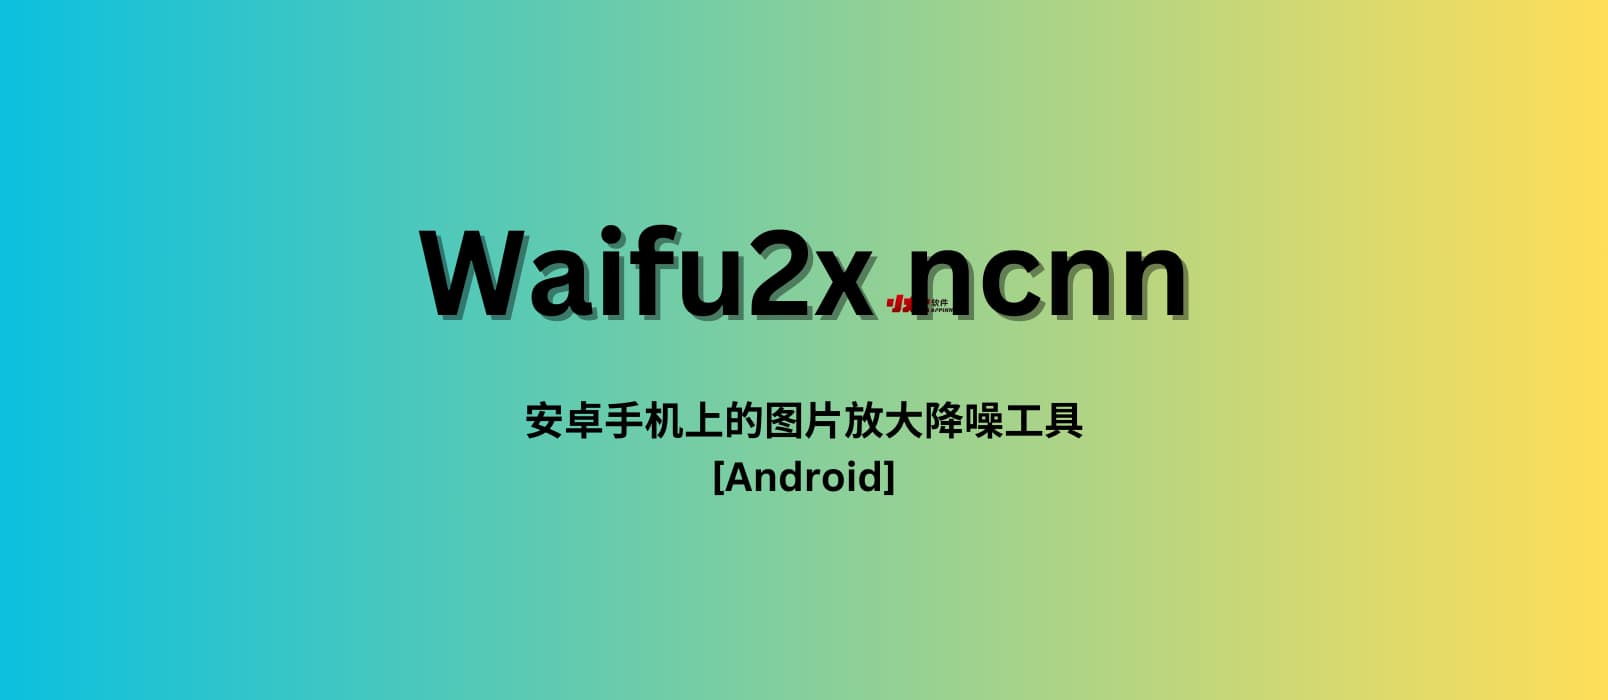 Waifu2x ncnn - 安卓手机上的图片放大降噪神器[Android]